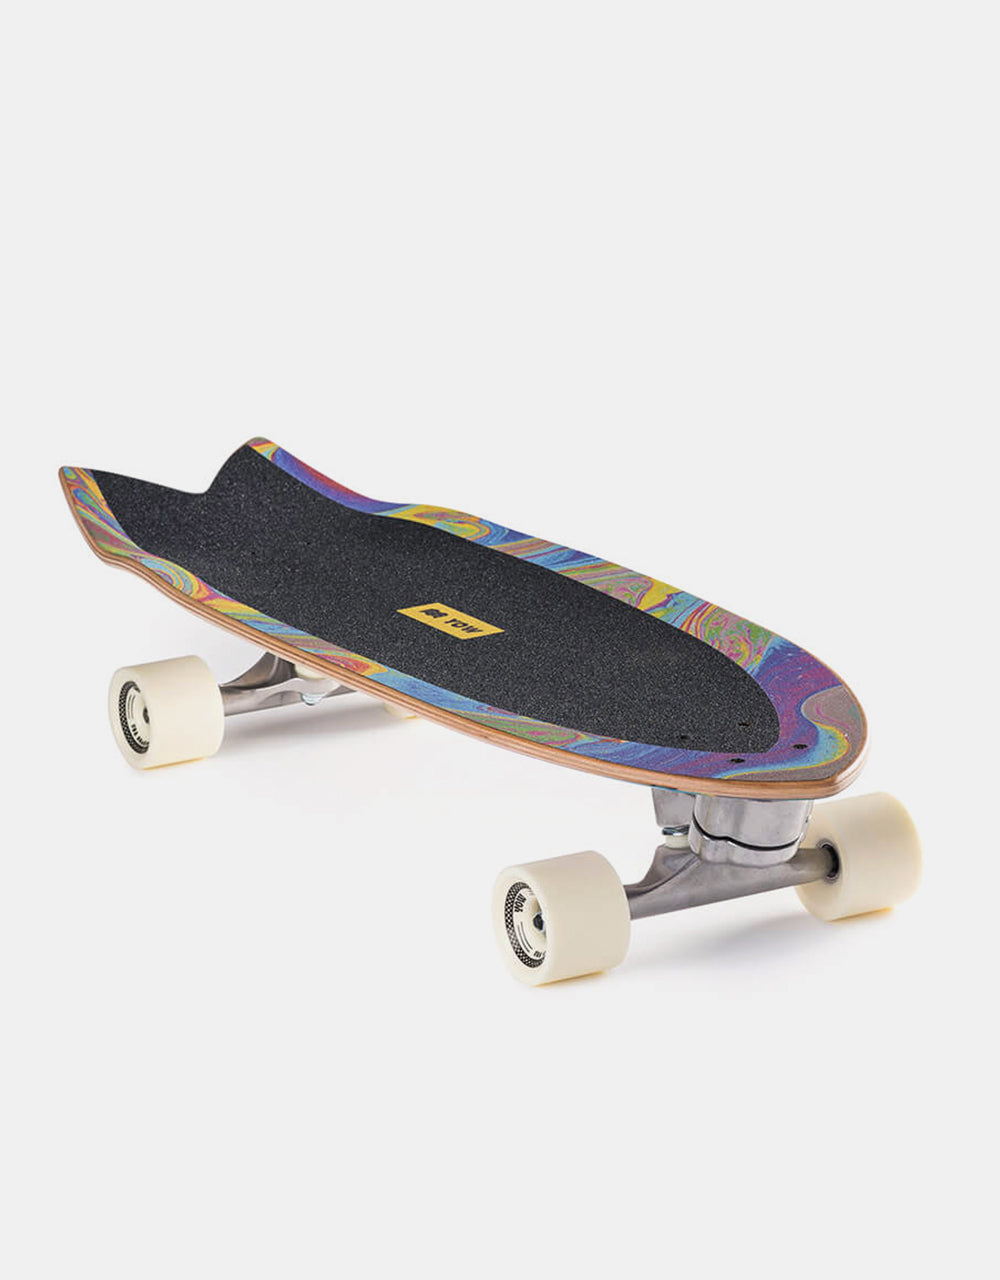 YOW Coxos SurfSkate Cruiser Skateboard - 10.25" x 31"